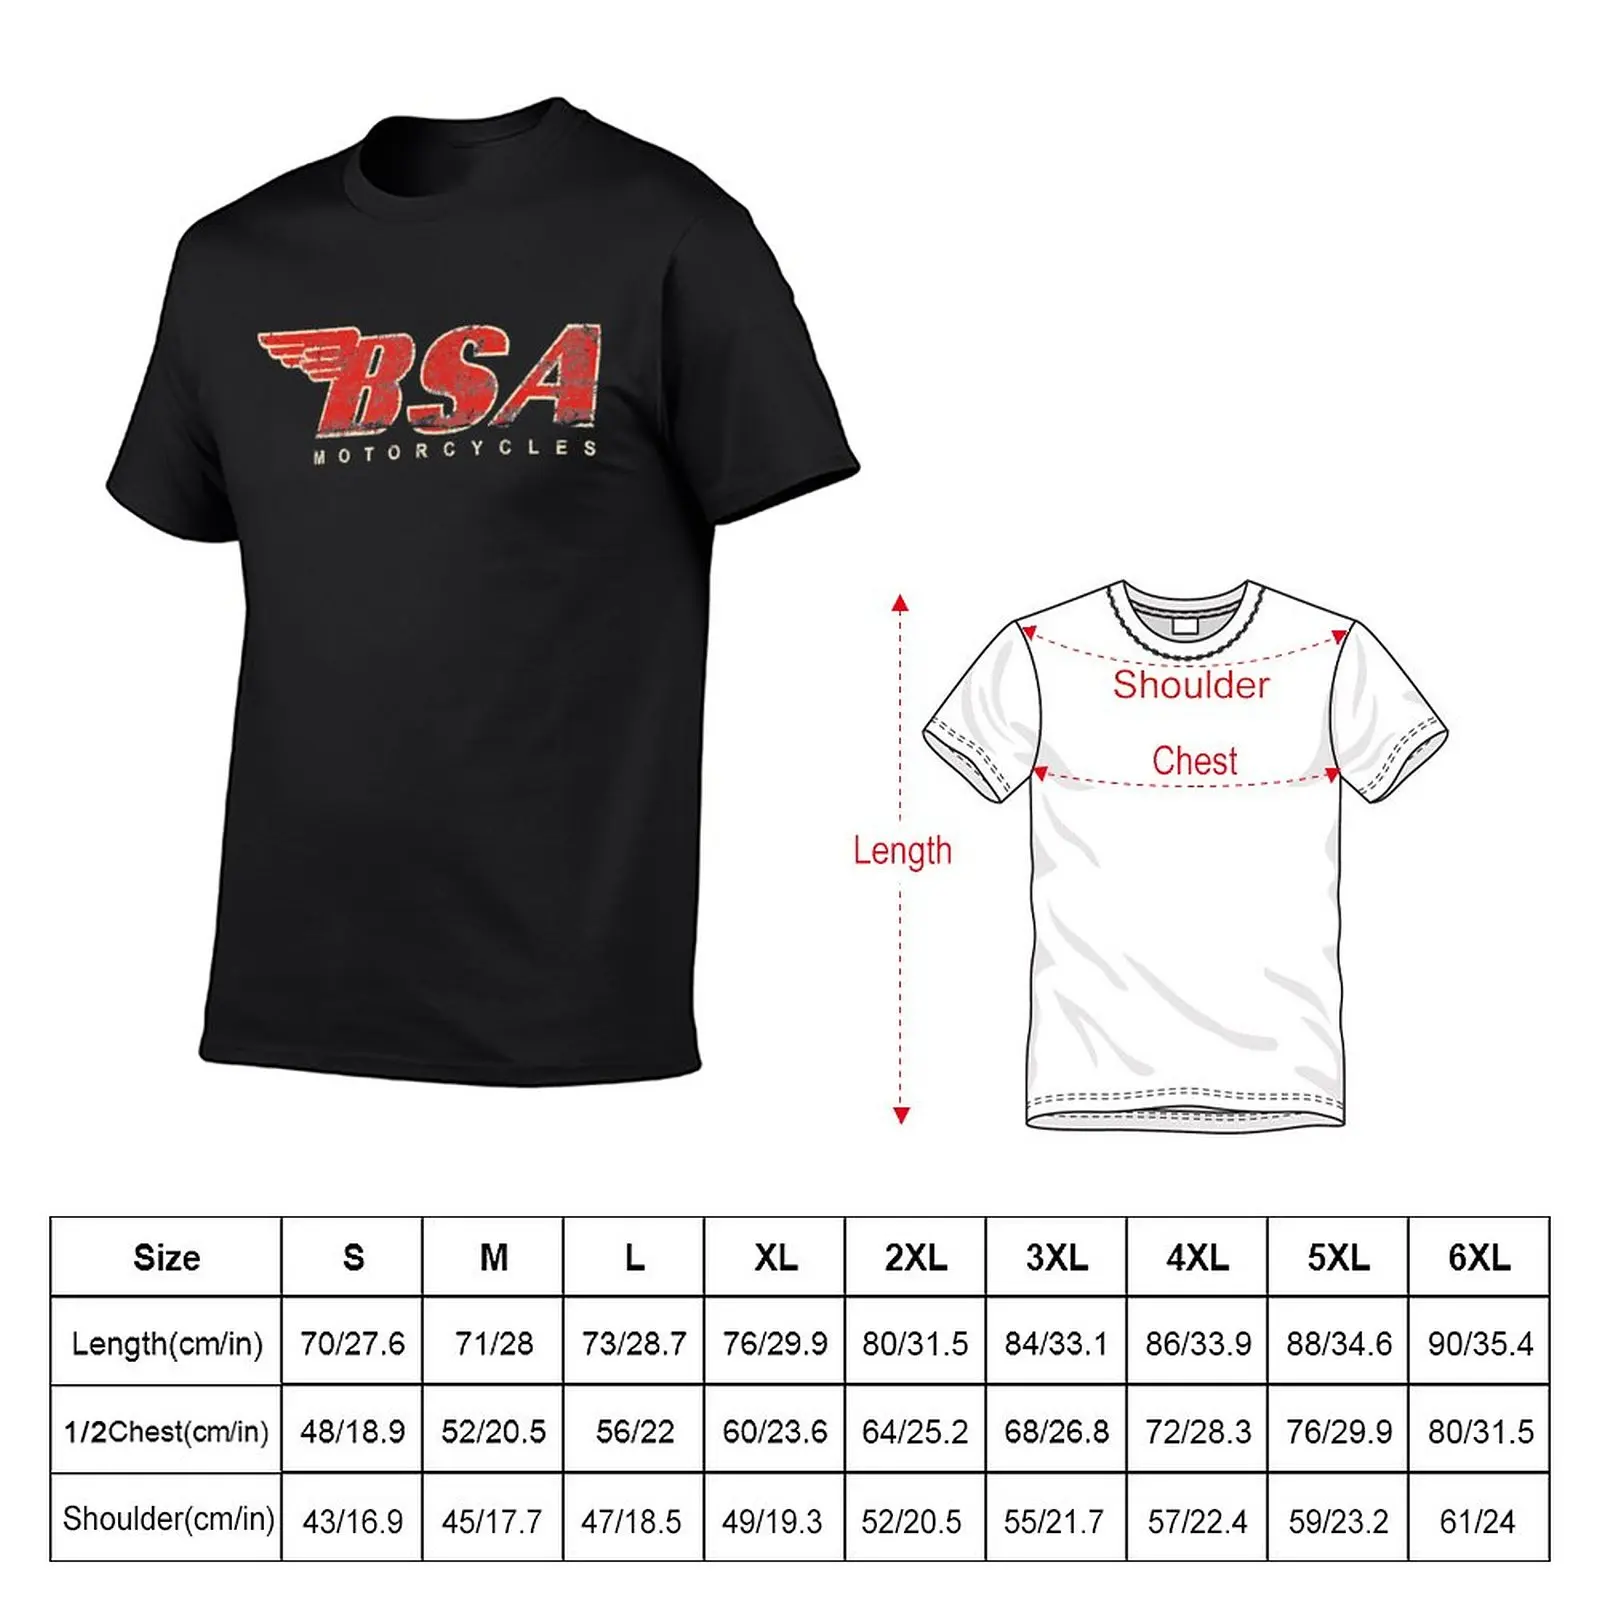 Новая футболка BSA-Motorcycle - BSA Motorcycle Tee с потертым логотипом, Классическая футболка нового выпуска, футболки оверсайз для мужчин Изображение 1